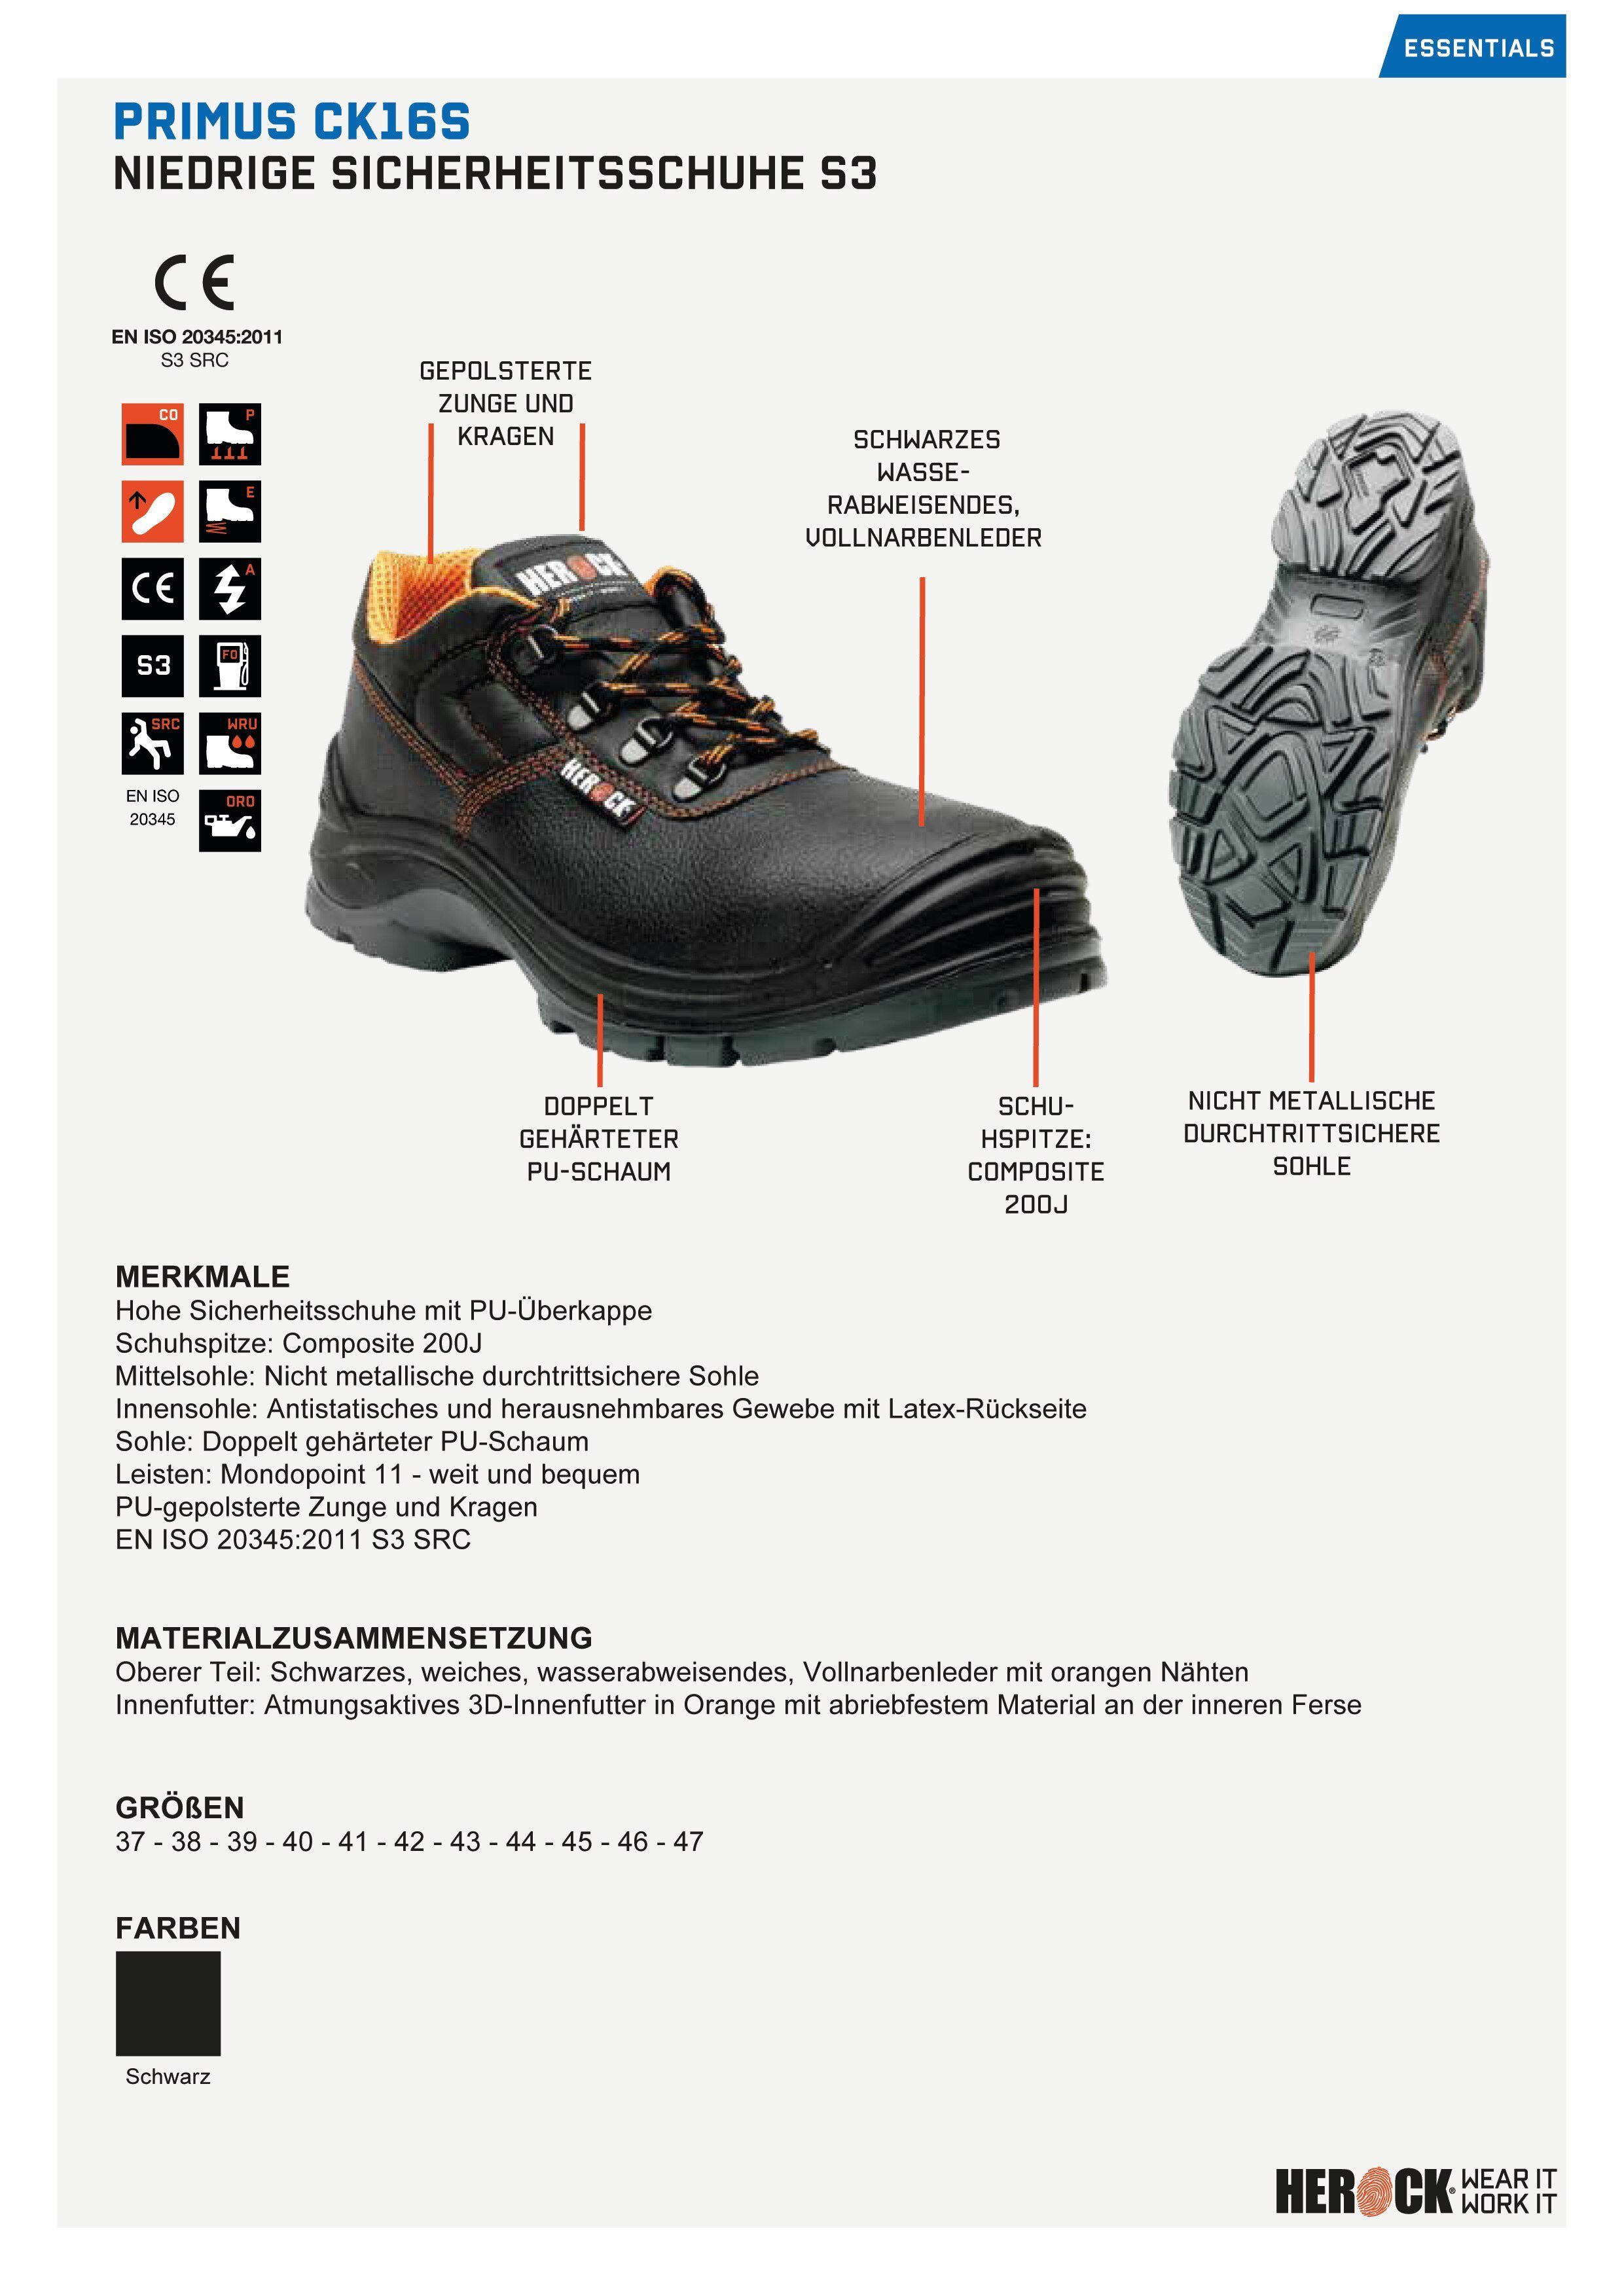 Herock Primus Low Compo Klasse bequem, PU-Überkappe, und leicht, Sicherheitsschuh S3 S3, Schuhe durchtrittsicher weit